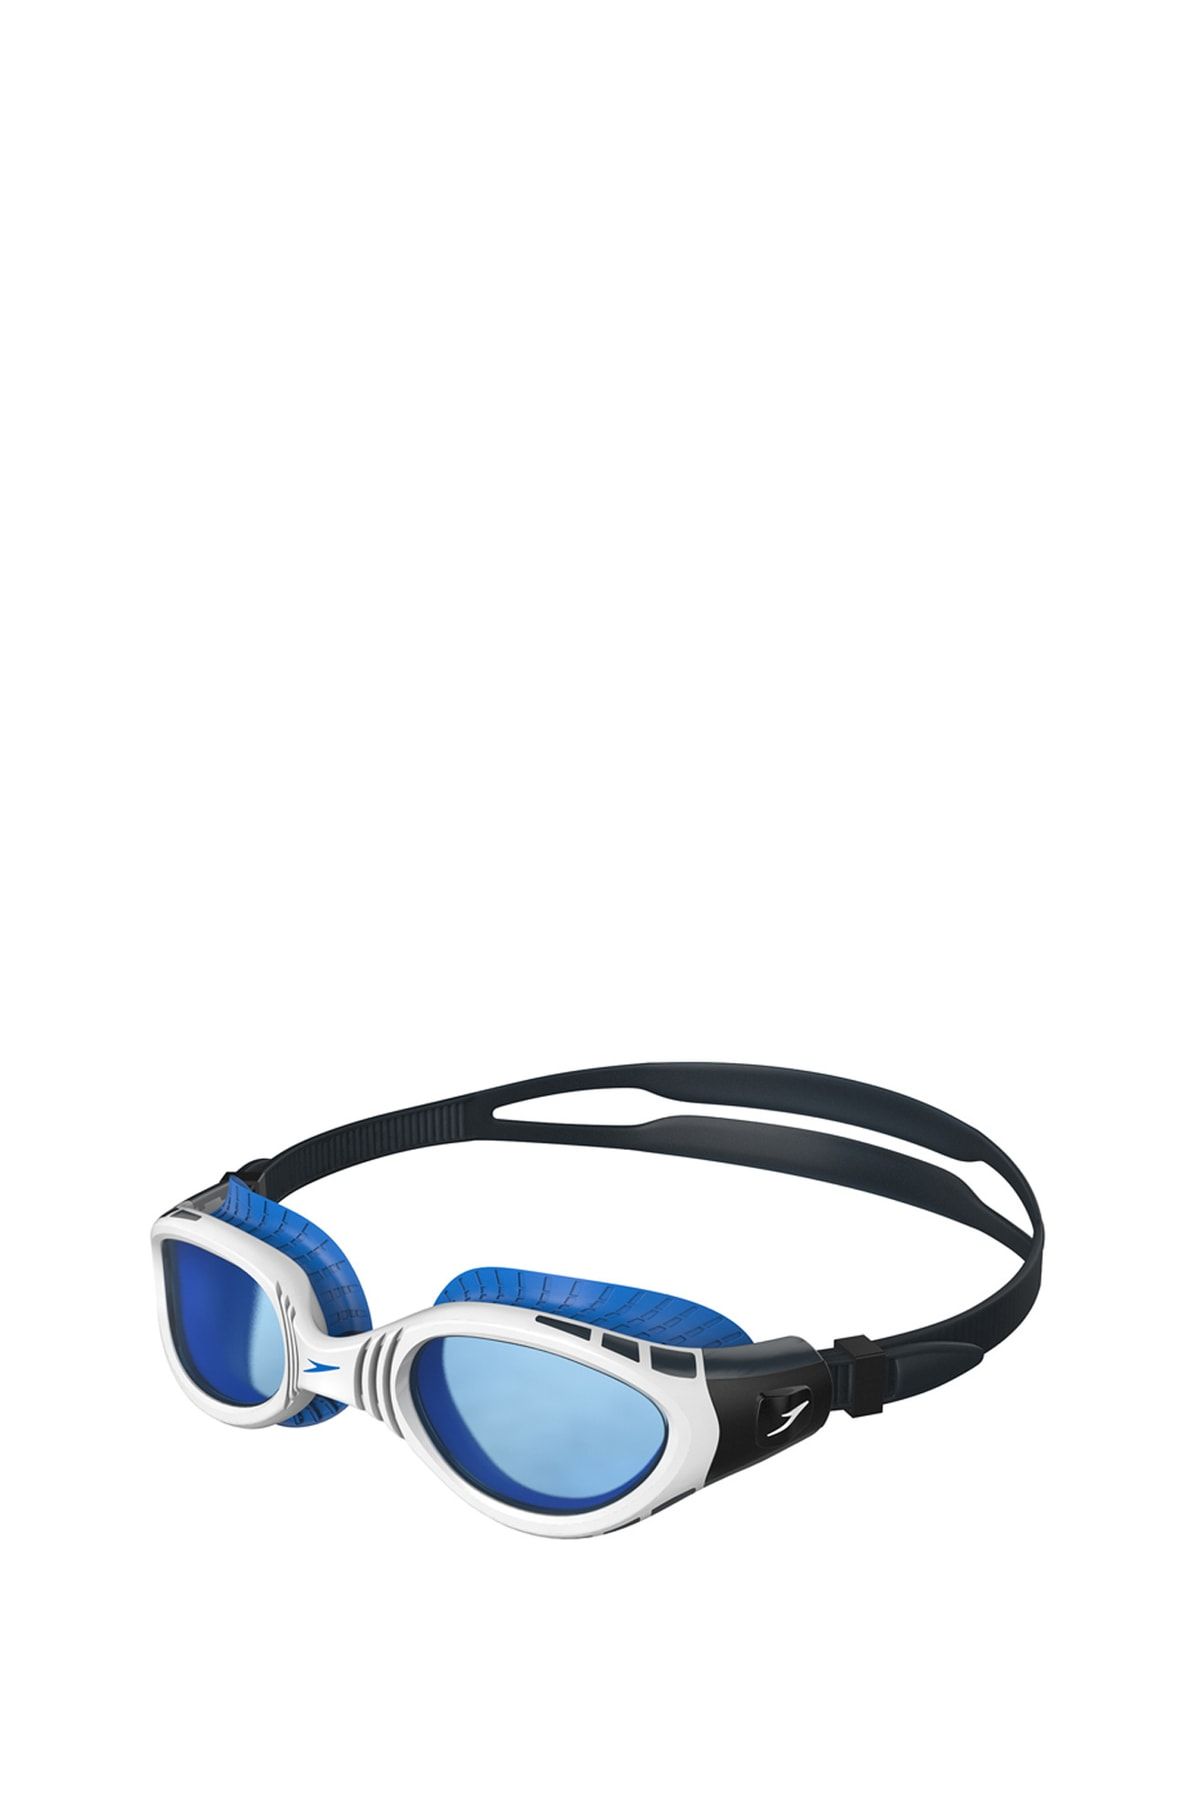 SPEEDO Beyaz - Mavi Yüzücü Gözlüğü 8-11315c107 Fut Bıof Fseal D